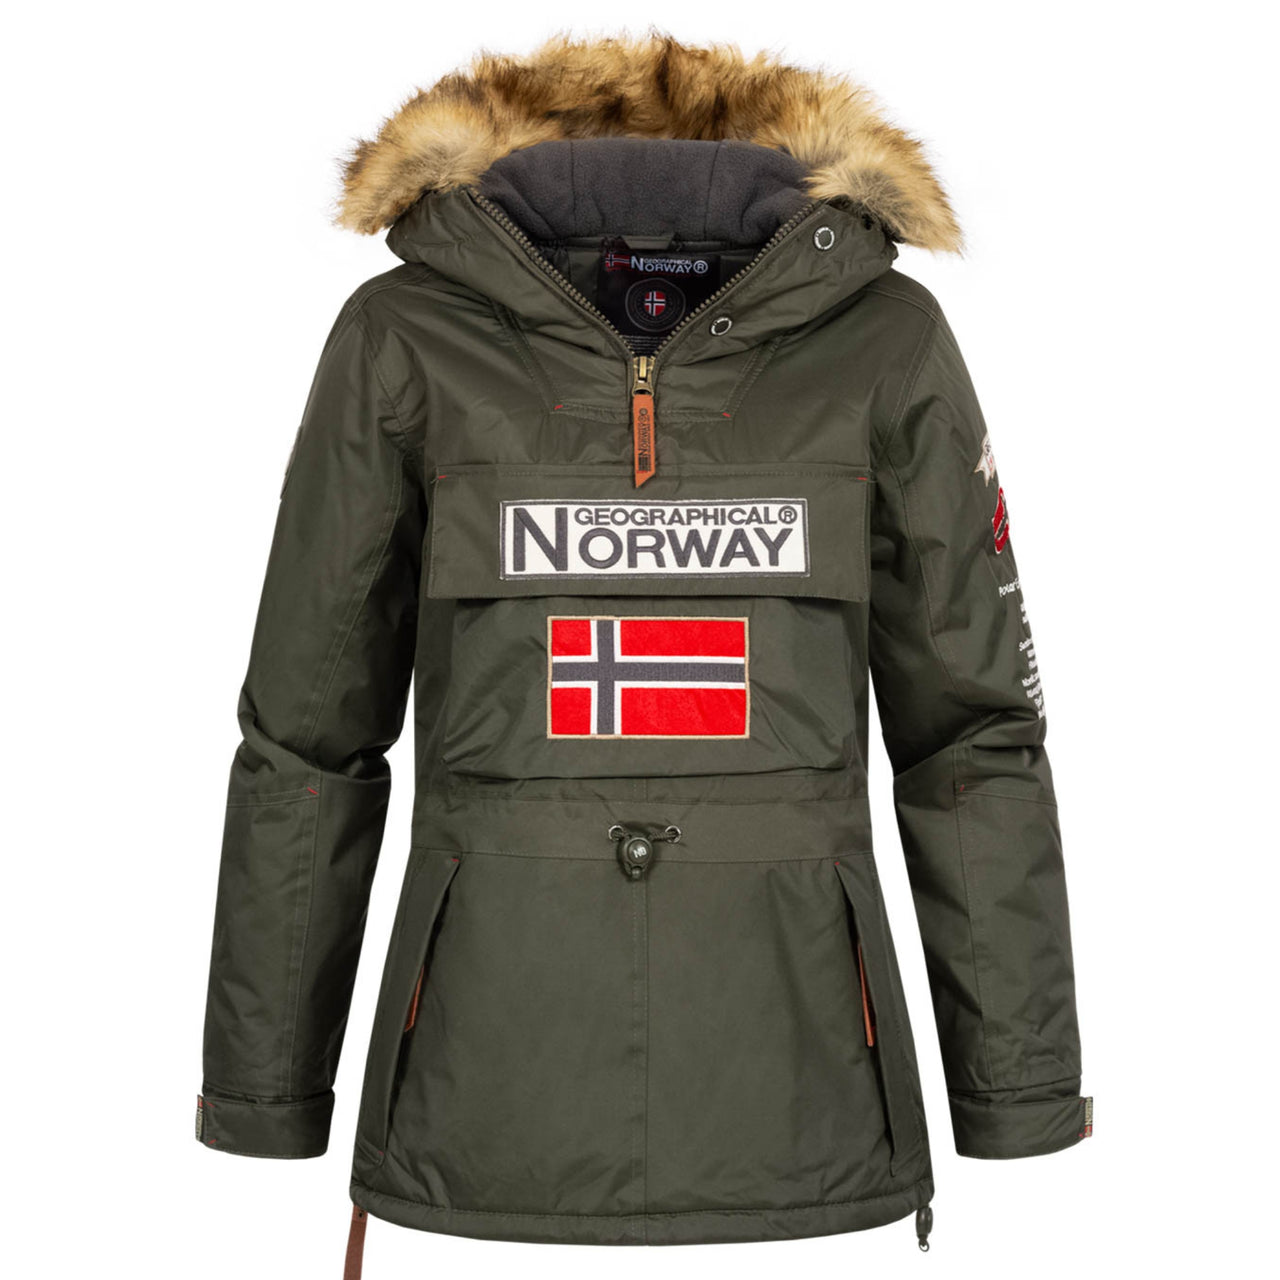 Geographical Norway Jacken zum Überziehen –